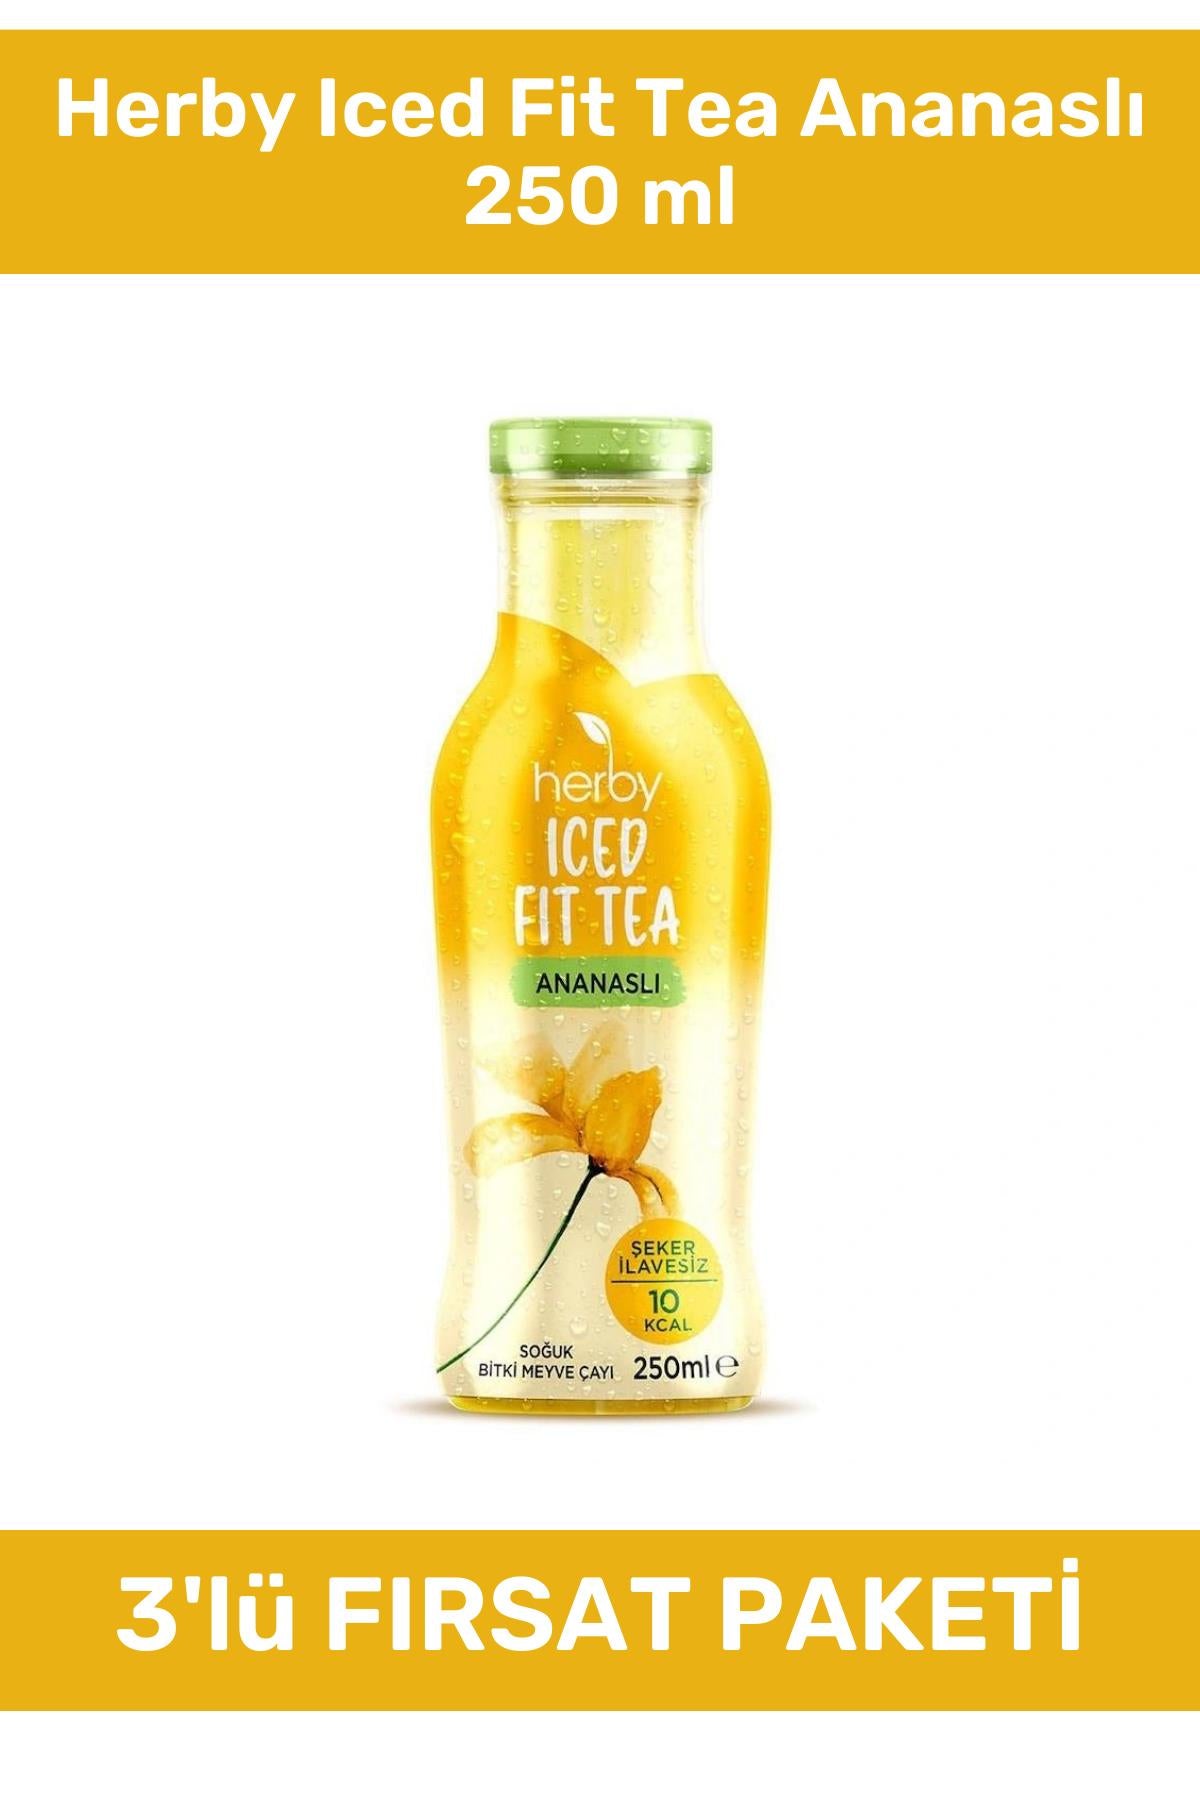 Herby Iced Fit Tea Ananaslı 250 ml 3'lü Paket